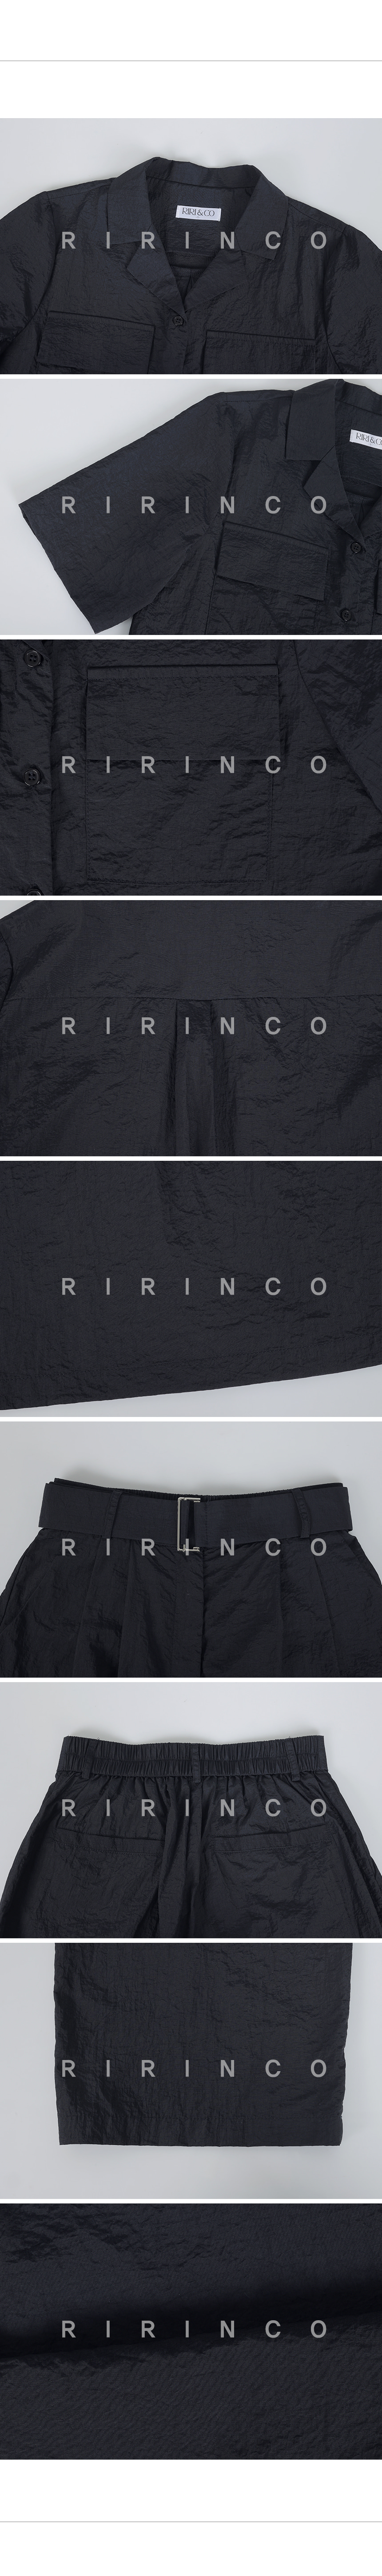 RIRINCO ベルト付き半袖シャツ&後ろゴムパンツ上下セット